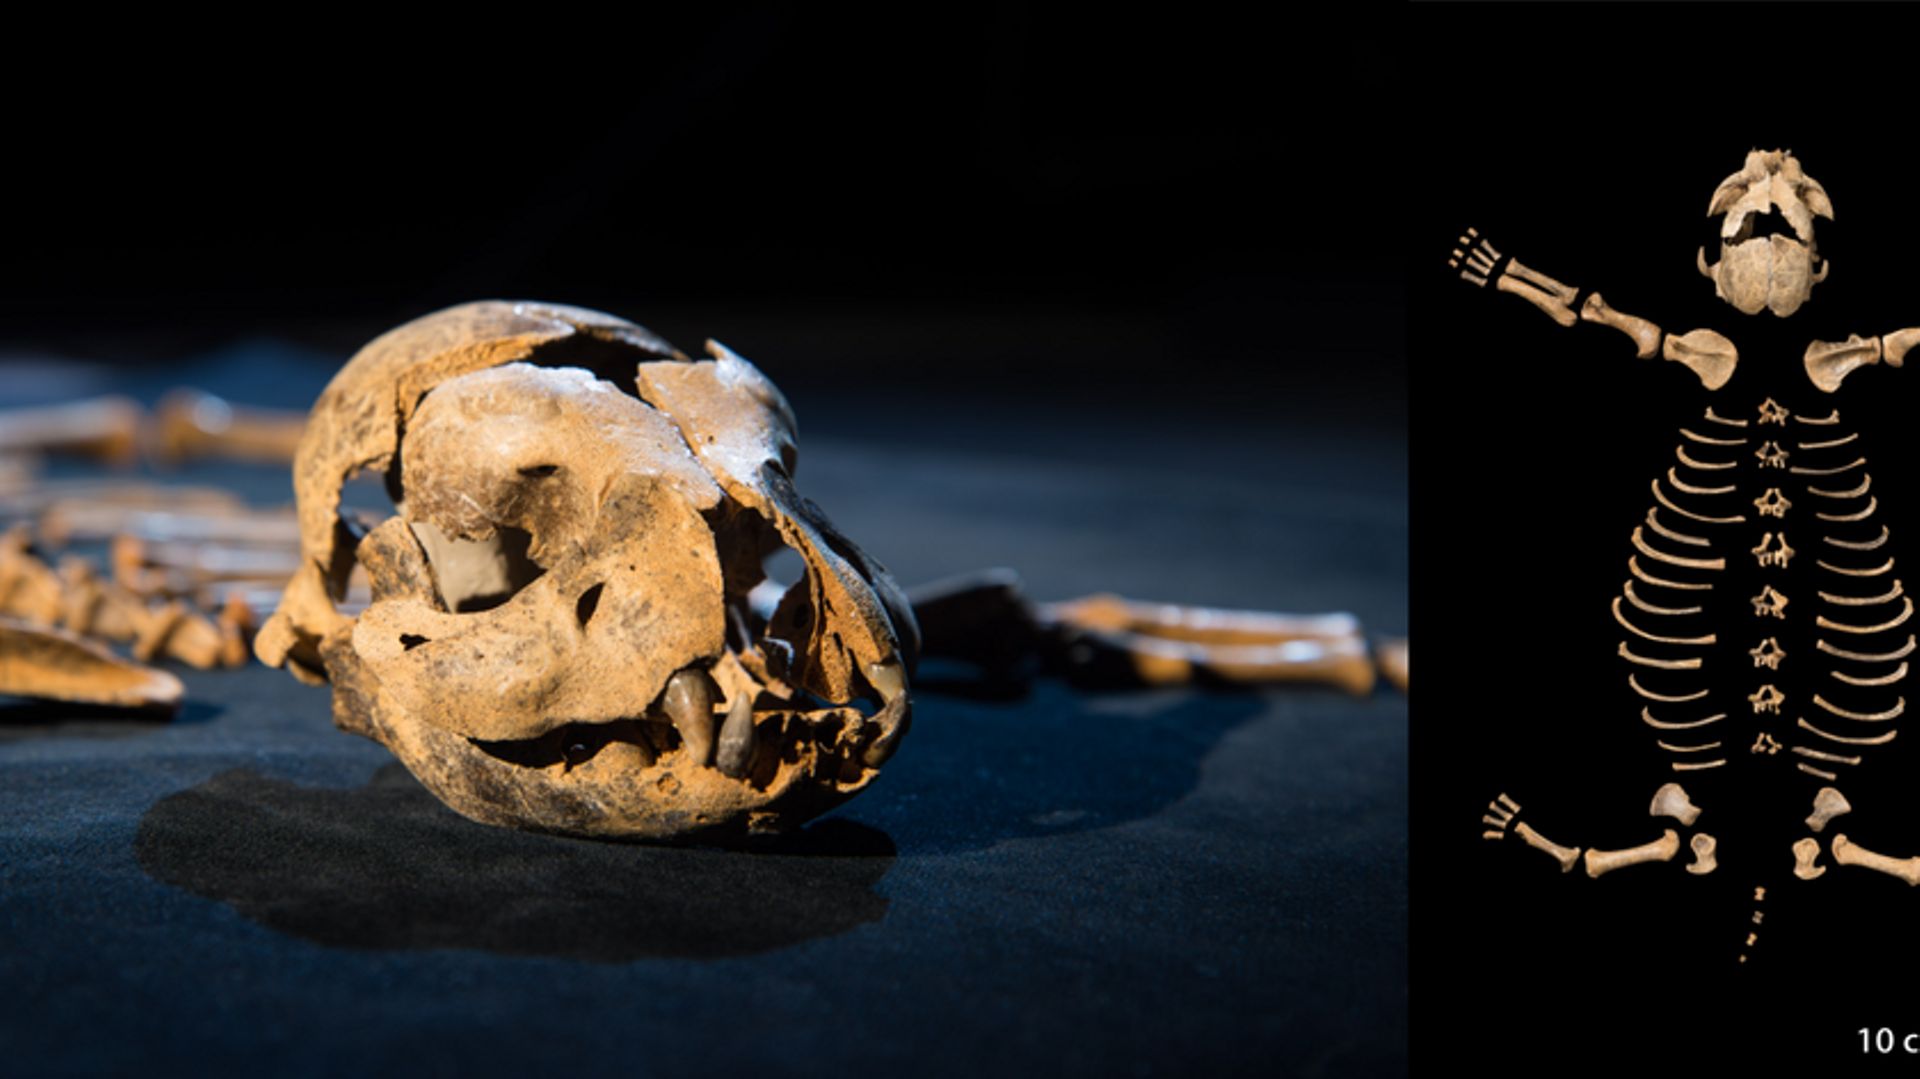 Squelette de bébé hyène trouvé dans la grotte Marie-Jeanne près de Dinant